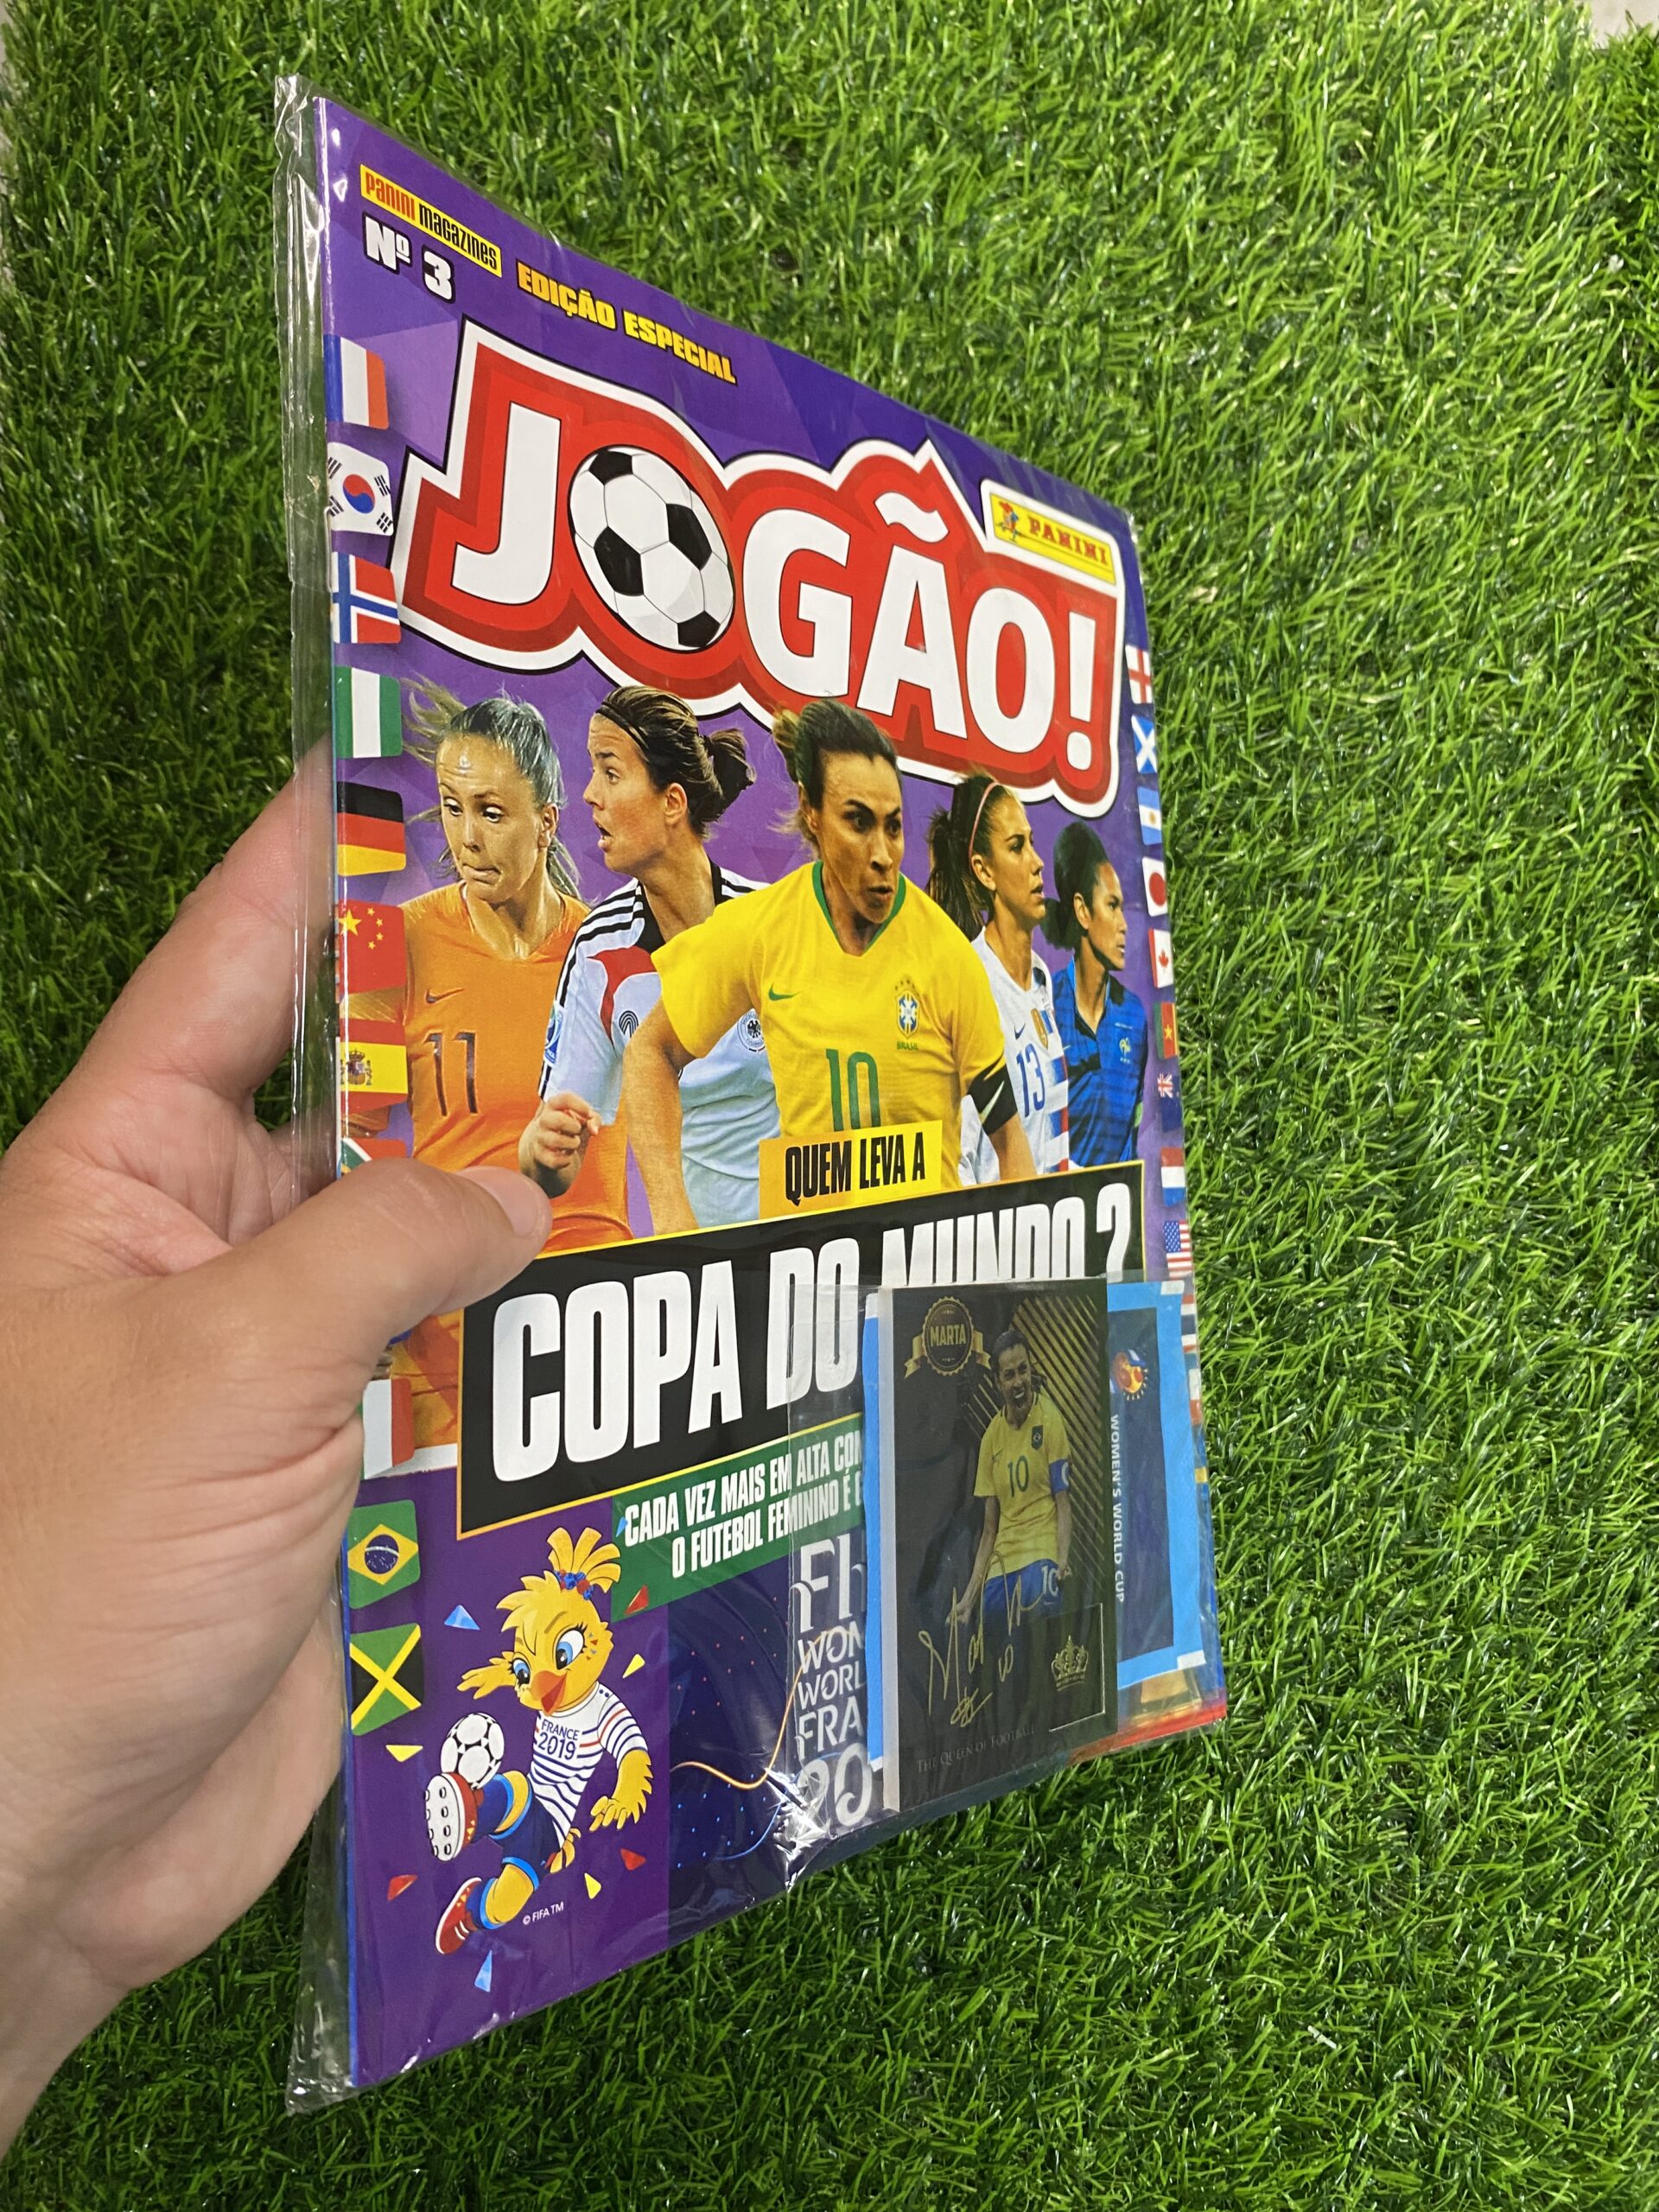 Futebol feminino no Brasil: Agora é a vez delas - Emerge Mag